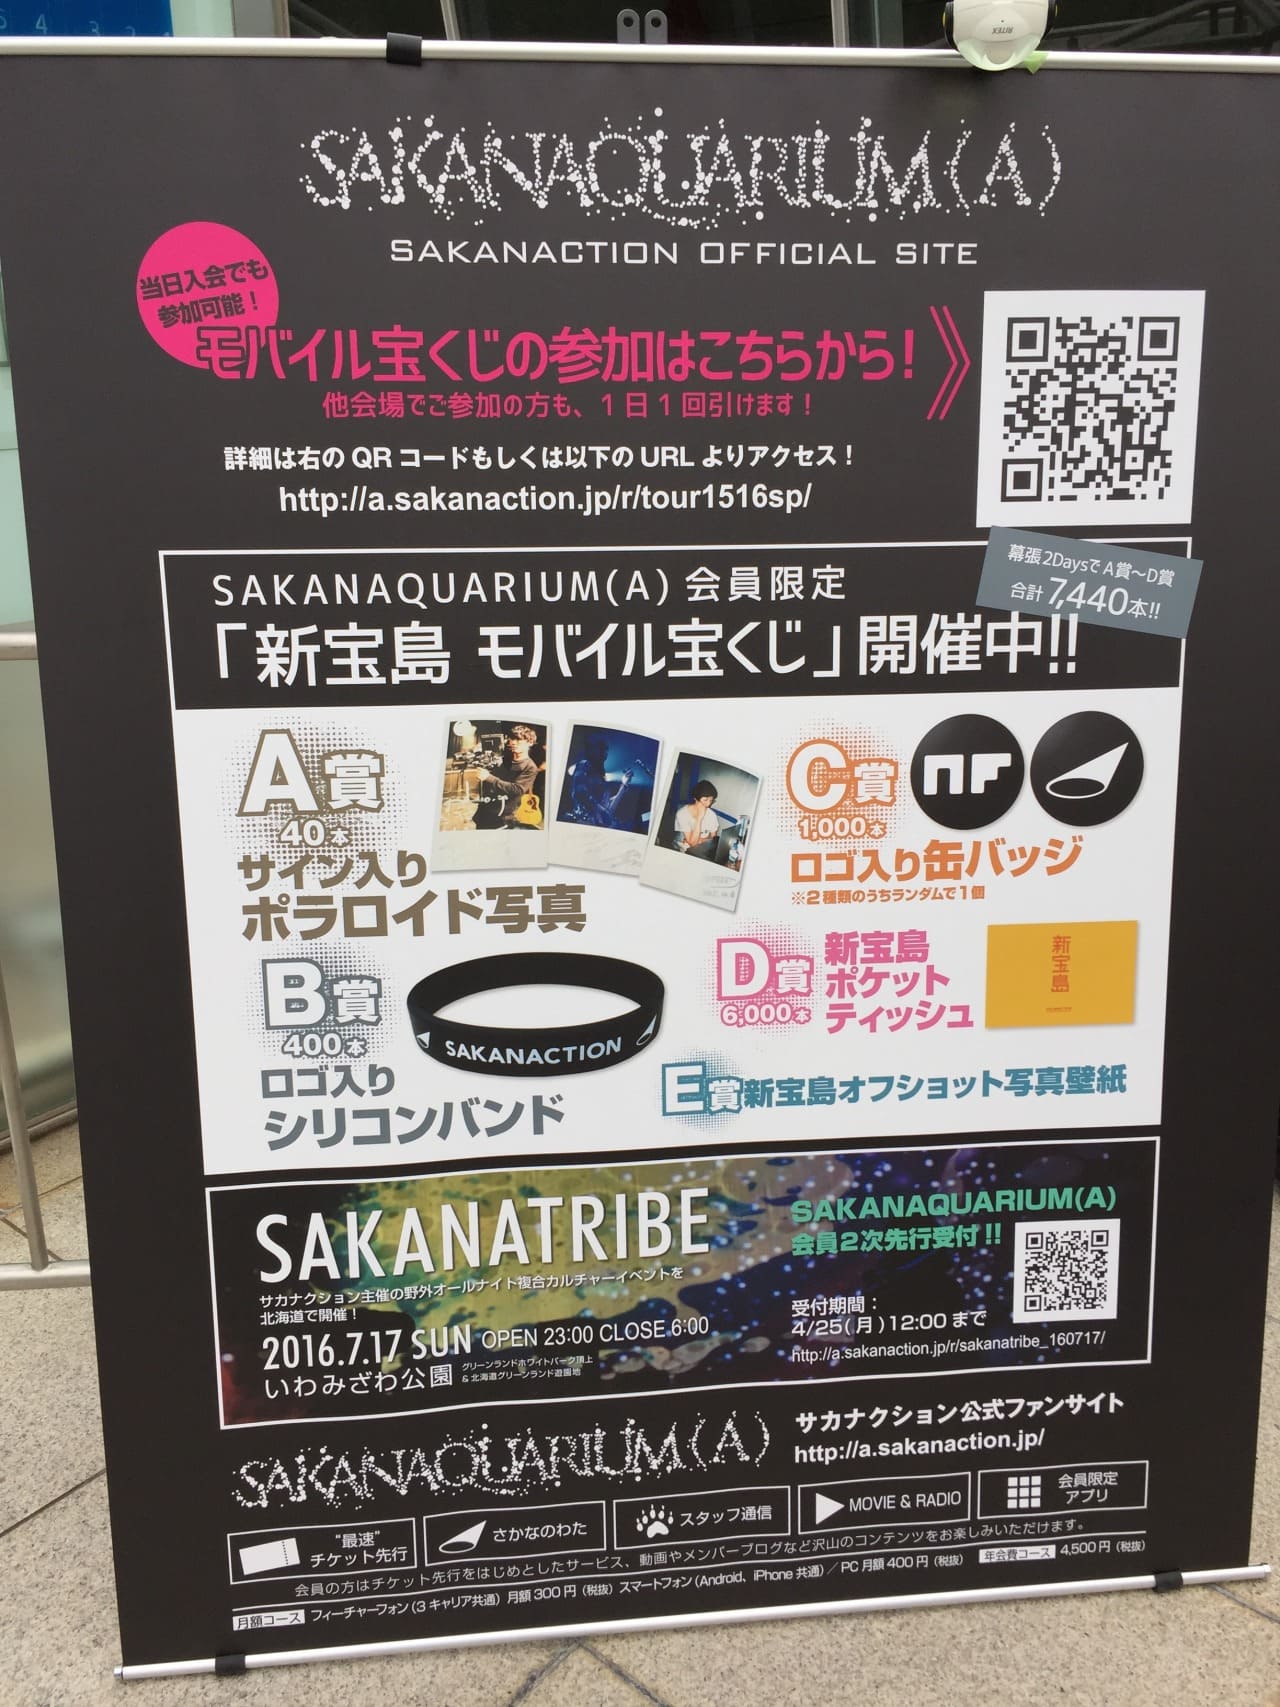 サカナクション SAKANAQUARIUM 2015-2016 NF Records launch tour